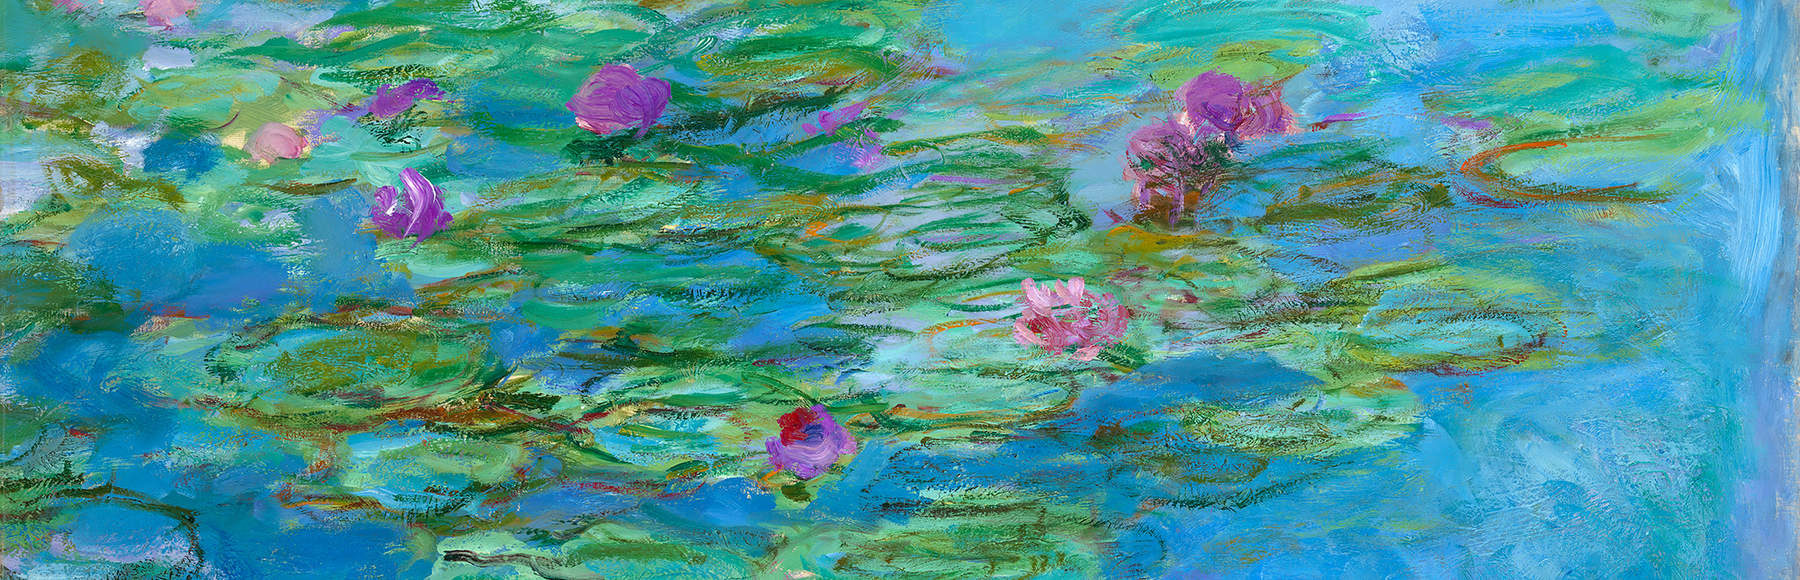 monet-water-lilies-1914-1917